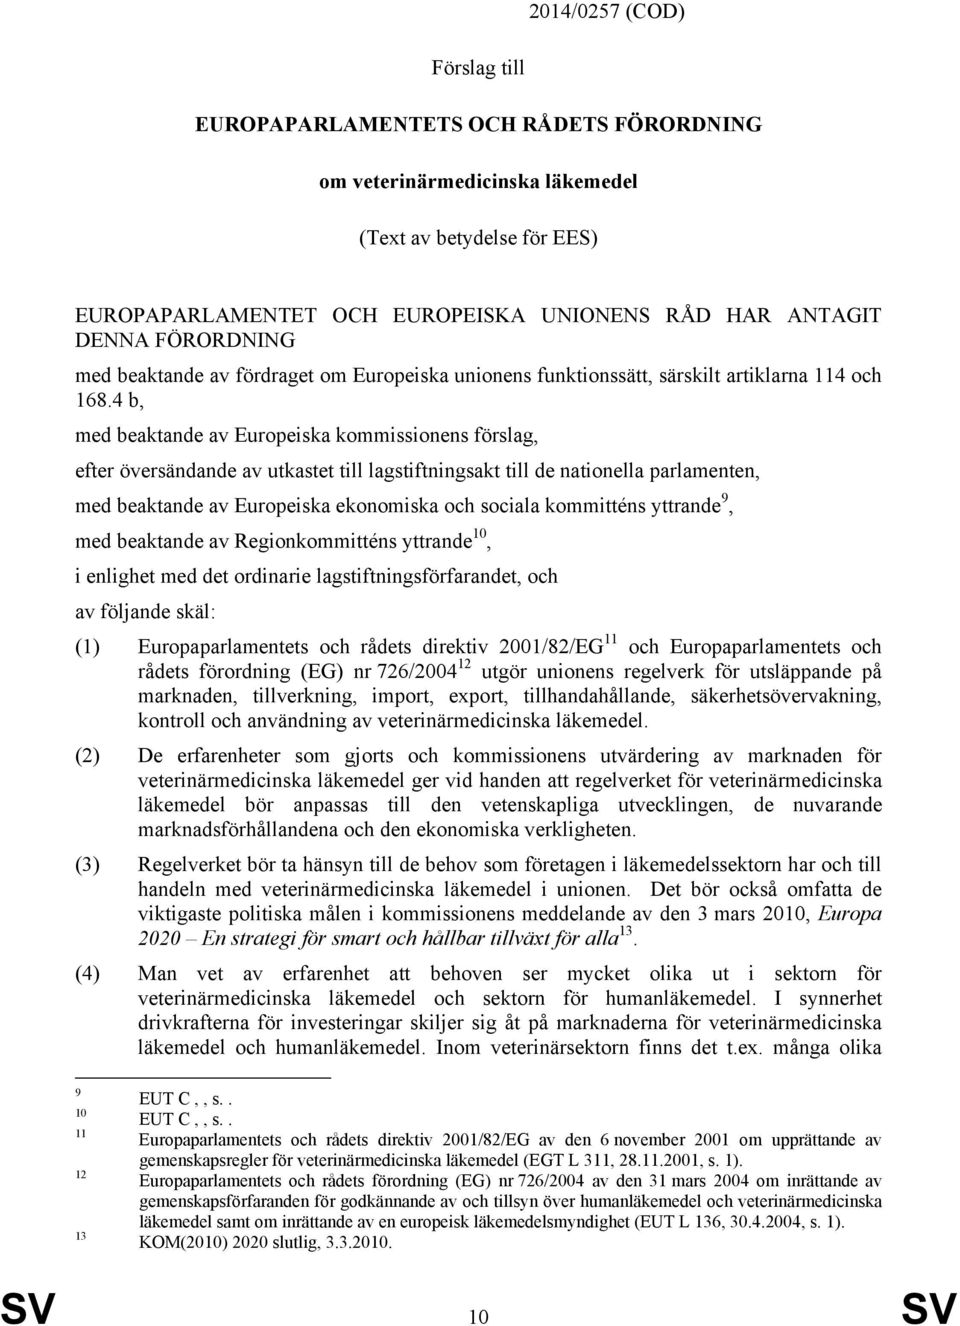 4 b, med beaktande av Europeiska kommissionens förslag, efter översändande av utkastet till lagstiftningsakt till de nationella parlamenten, med beaktande av Europeiska ekonomiska och sociala